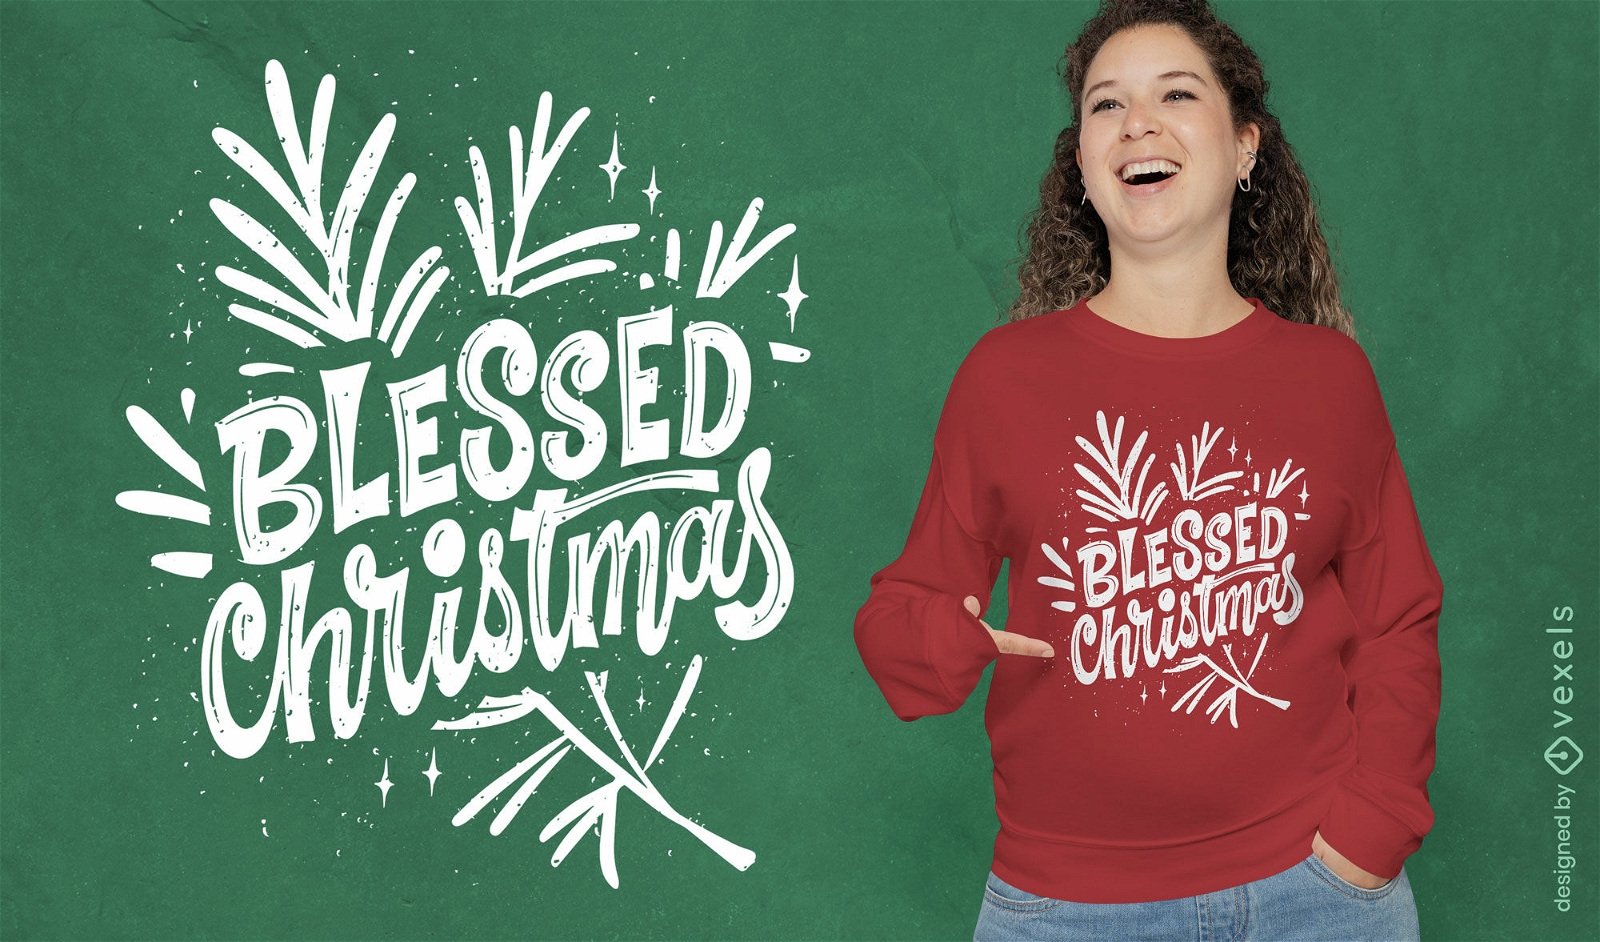 Blessed Christmas lettering t-shirt design